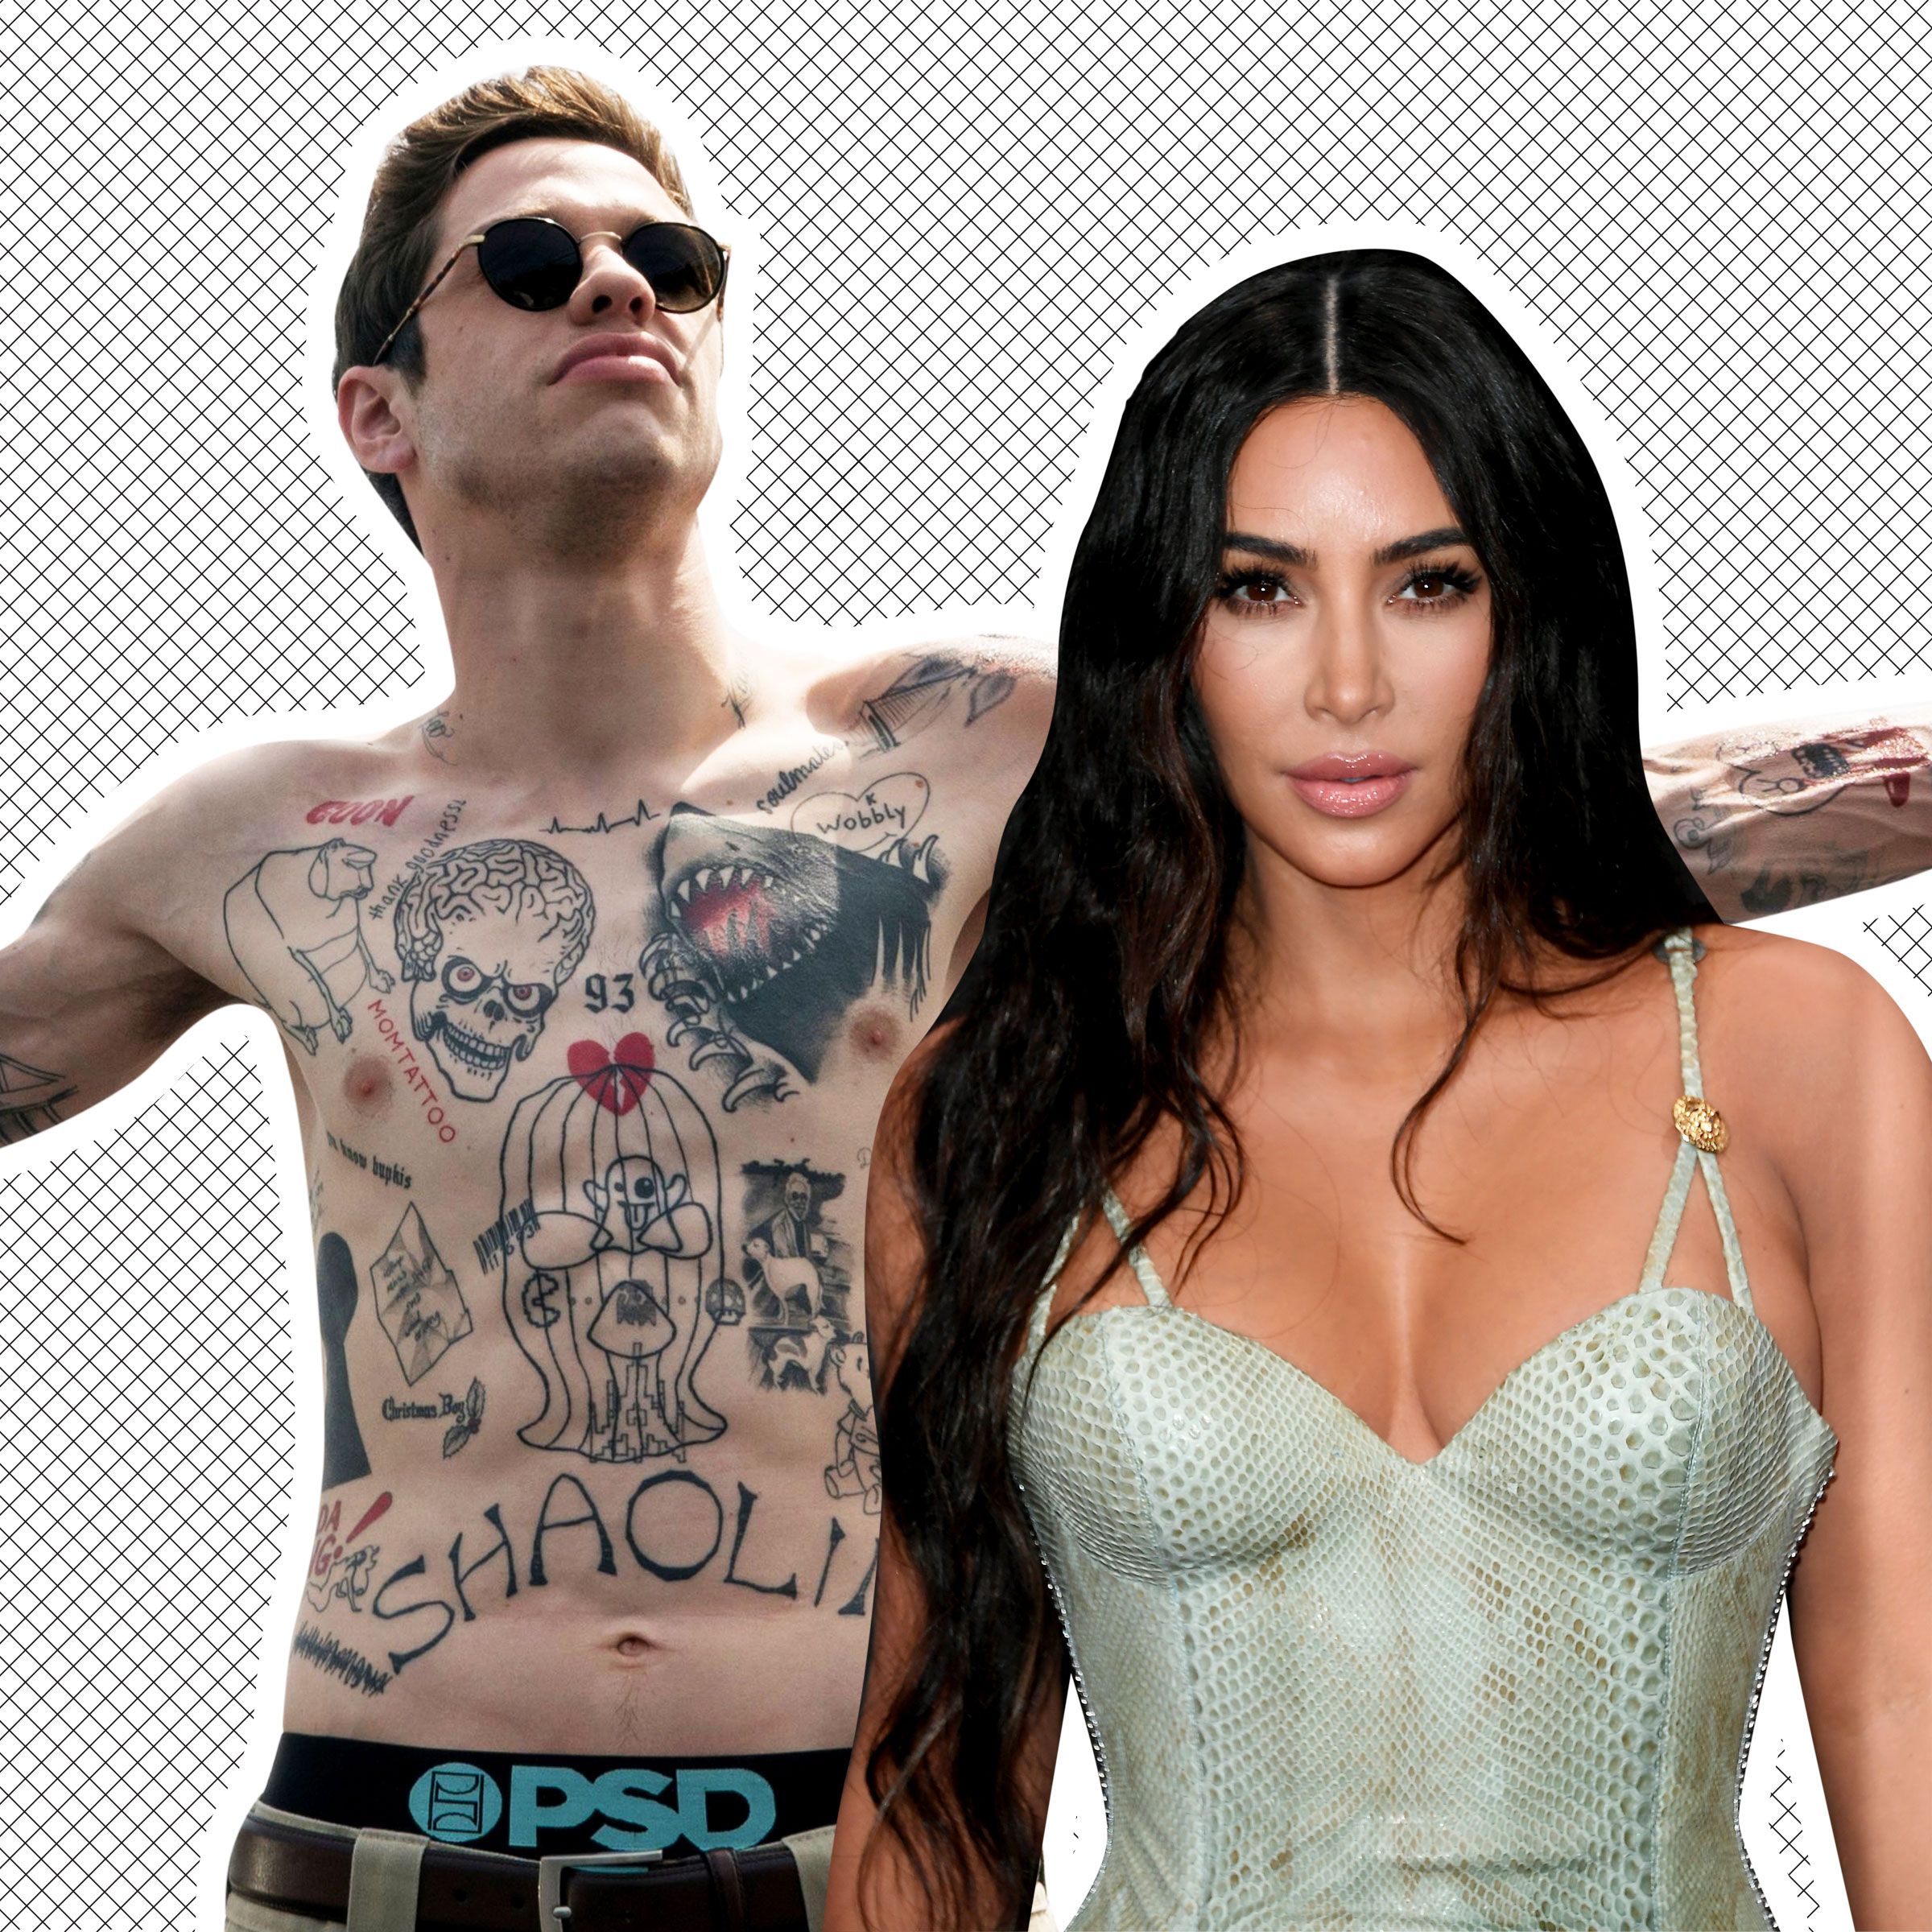 Is Pete Davidson removing his Kim Kardashianthemed tattoos